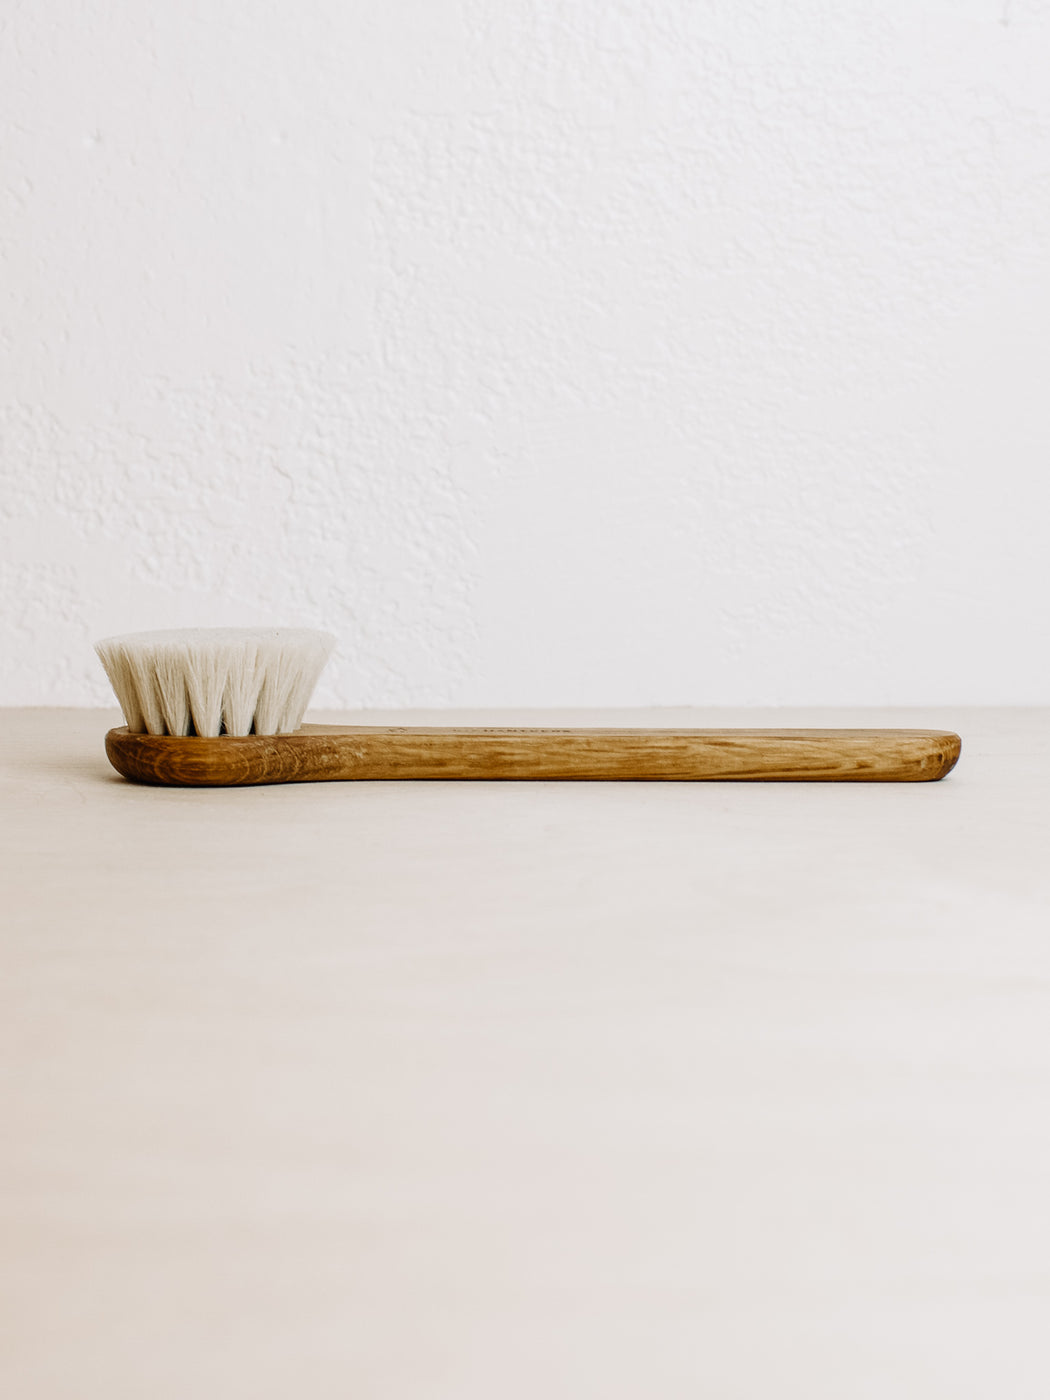 Iris Hantverk- Dry Use Face Brush